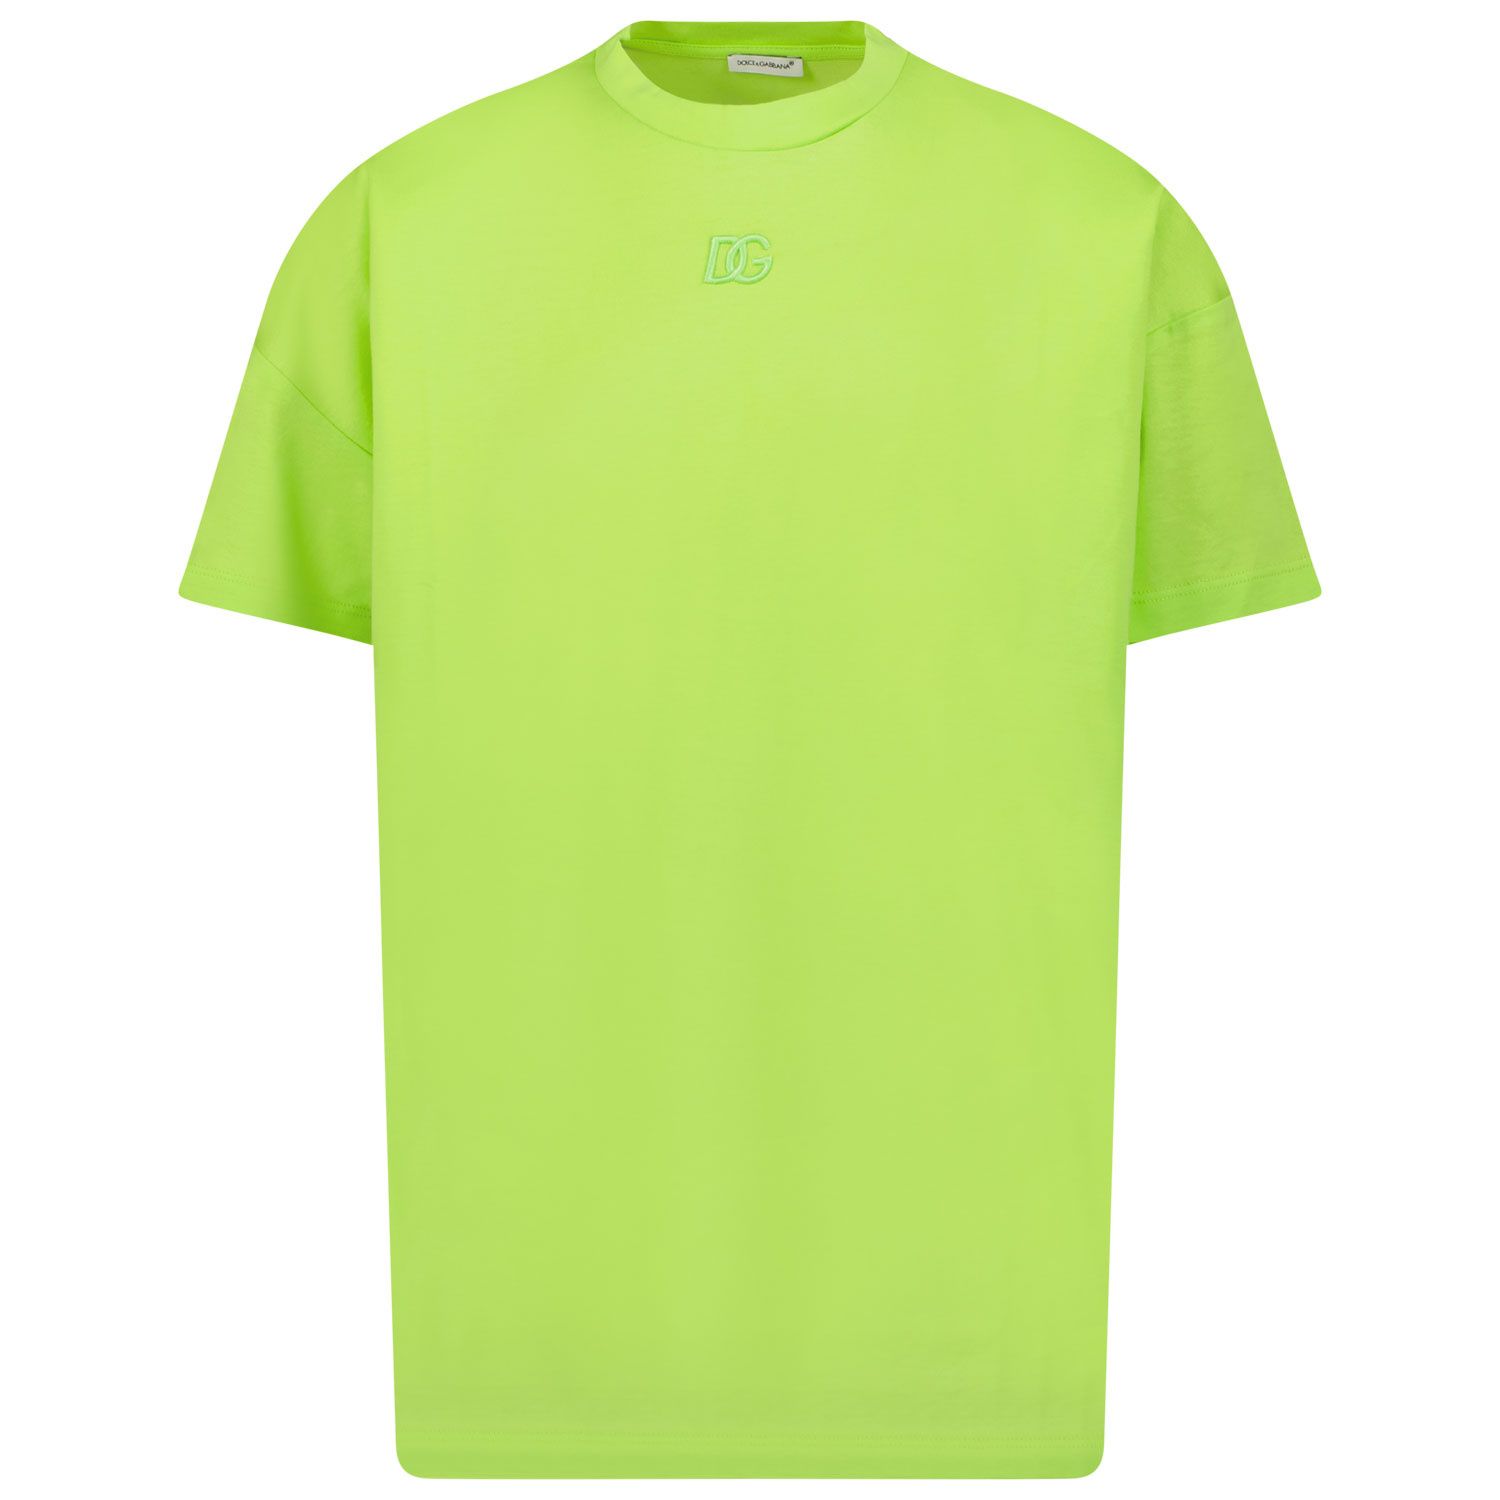 Afbeelding van Dolce & Gabbana L4JTER kinder t-shirt fluor groen